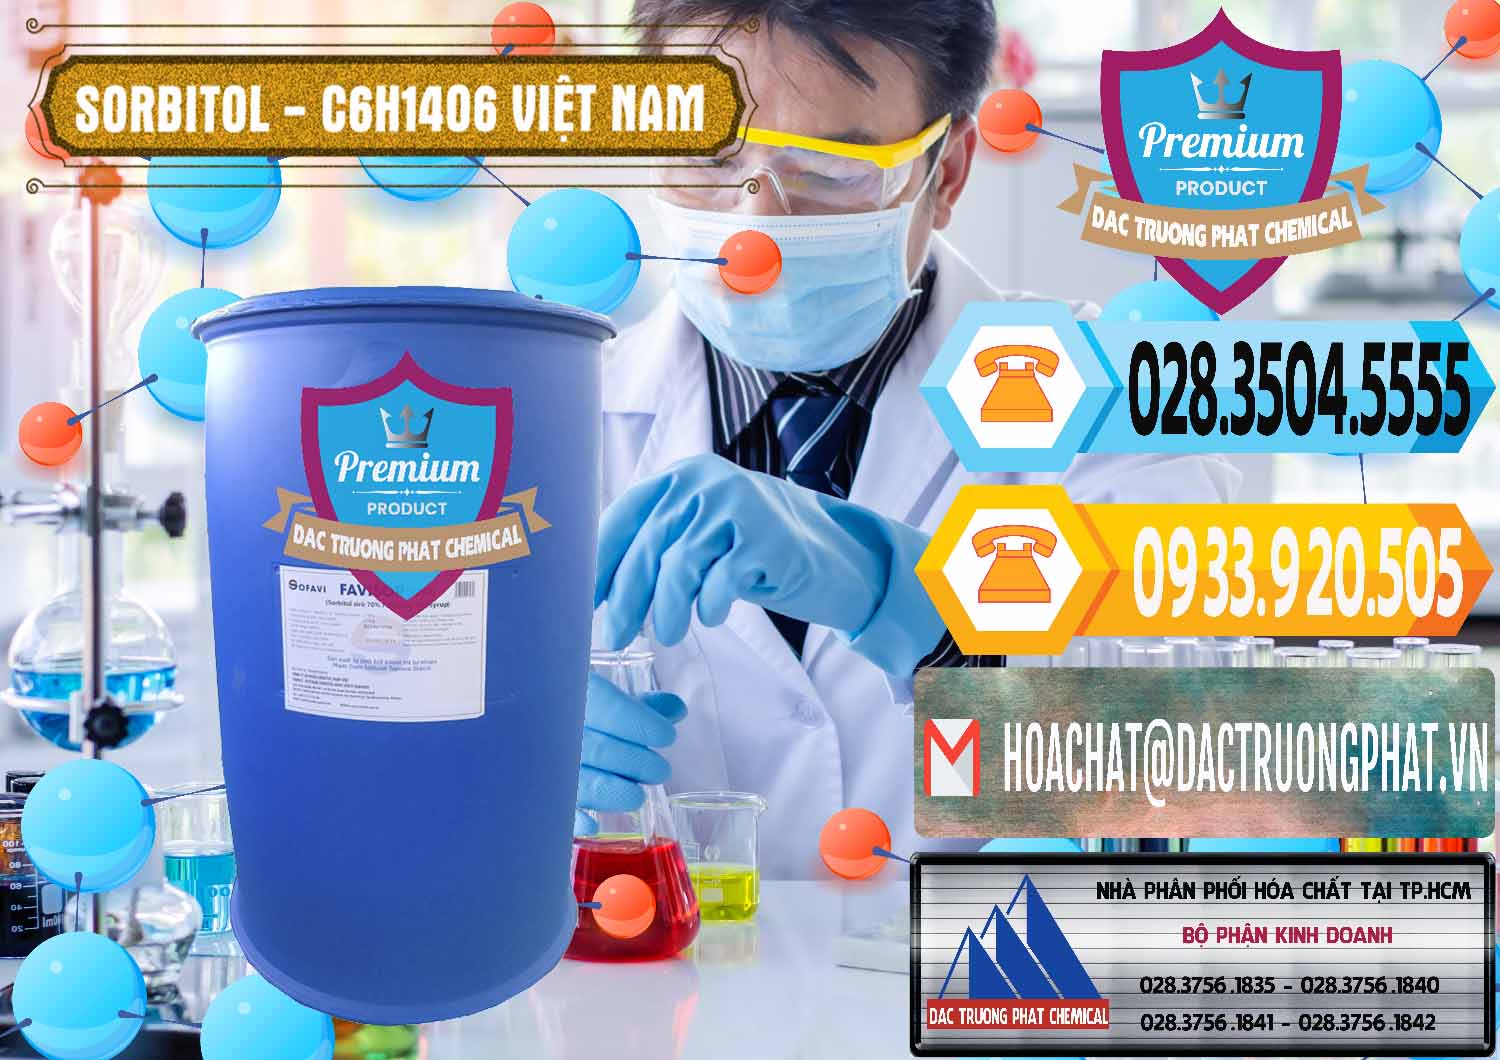 Công ty chuyên kinh doanh & bán Sorbitol - C6H14O6 Lỏng 70% Food Grade Việt Nam - 0438 - Nơi chuyên cung cấp & kinh doanh hóa chất tại TP.HCM - hoachattayrua.net